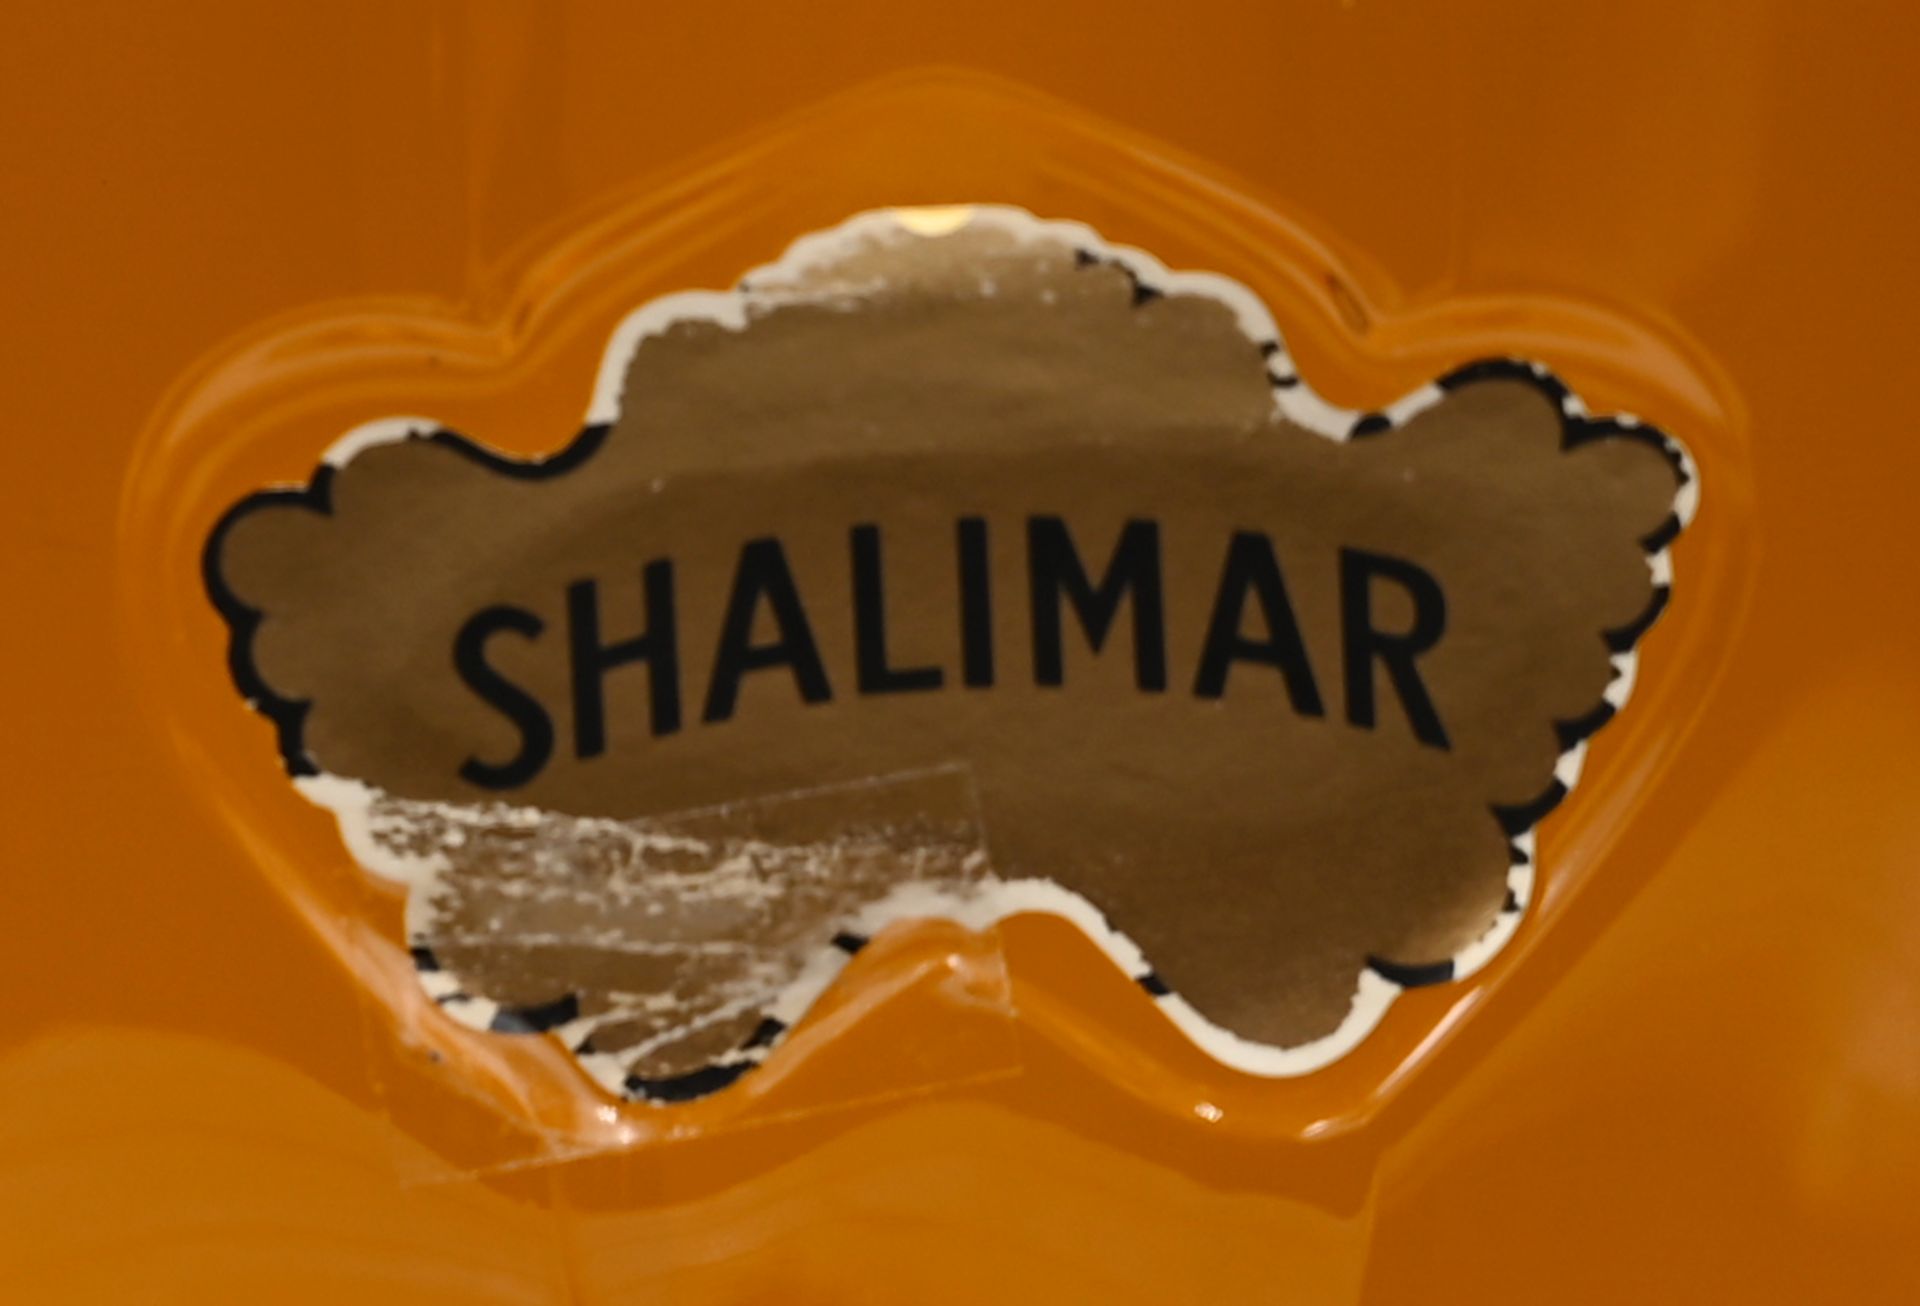 1 Parfümflacon "Shalimar" von GUERLAIN, Paris, mit Flüssigkeit, Gesamthöhe ca. 38cm, Gsp. - Bild 2 aus 3